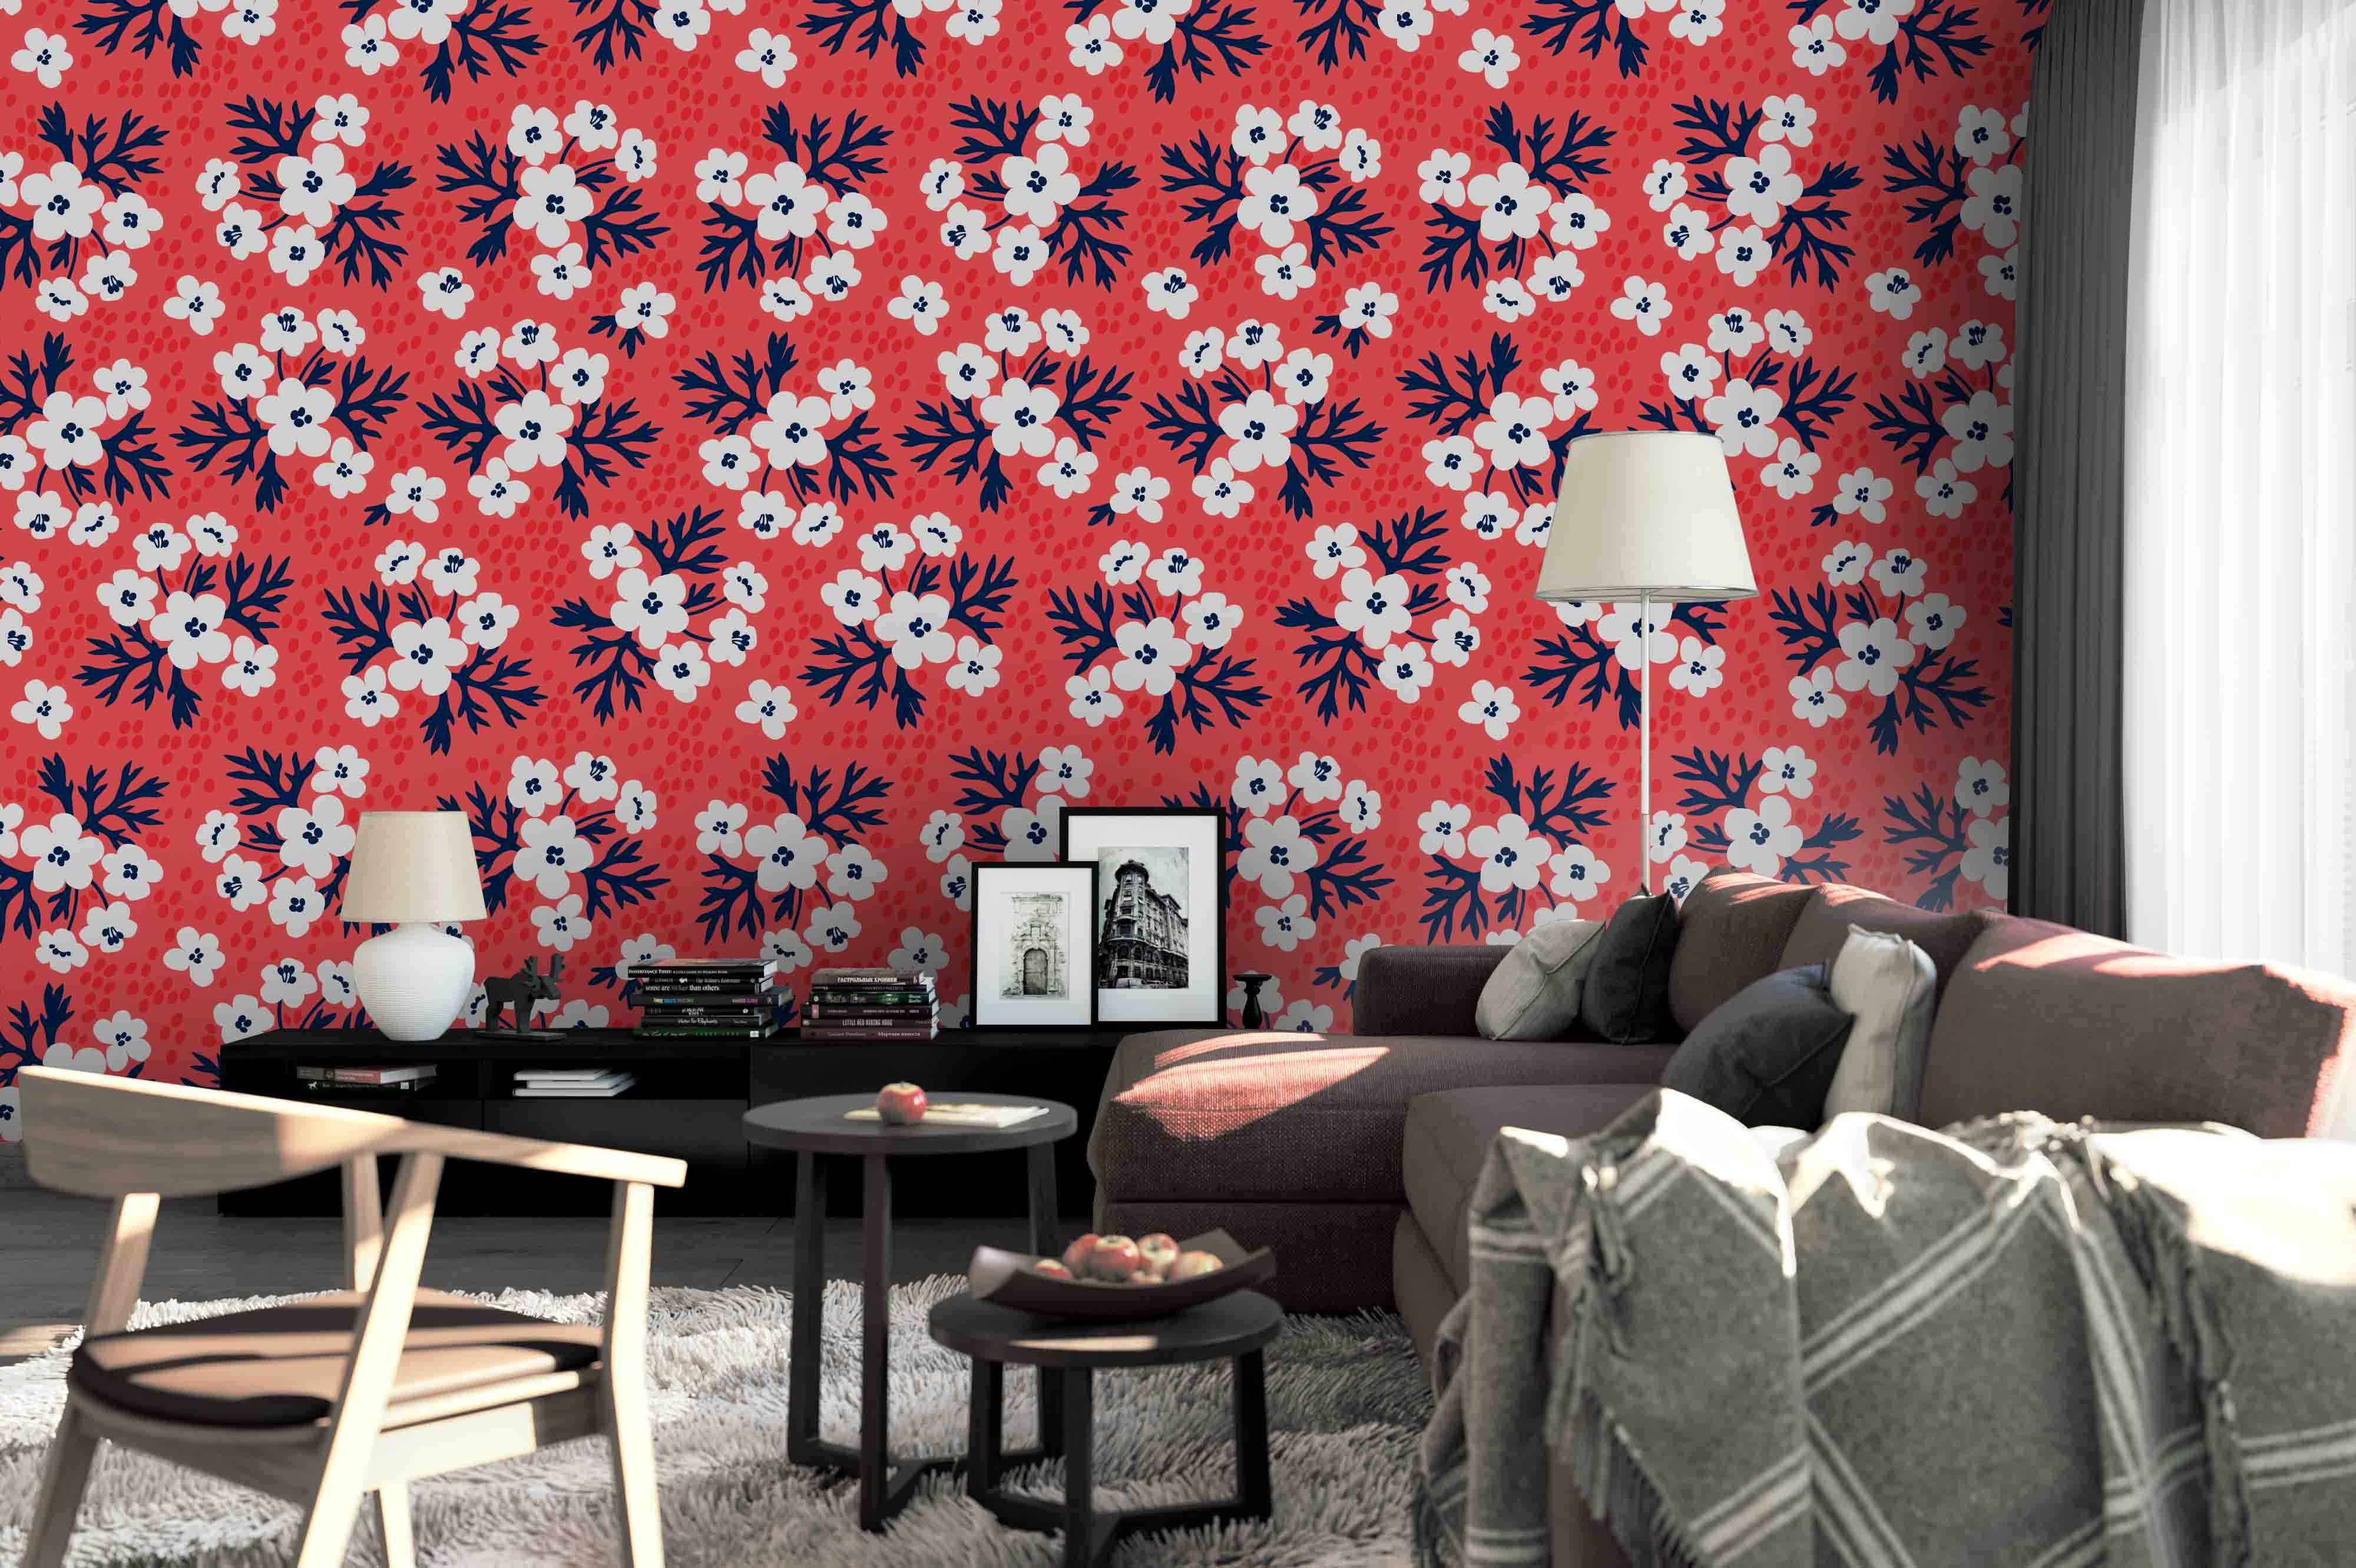 3D Floral Wall Mural Wallpaper 59- Jess Art Decoration